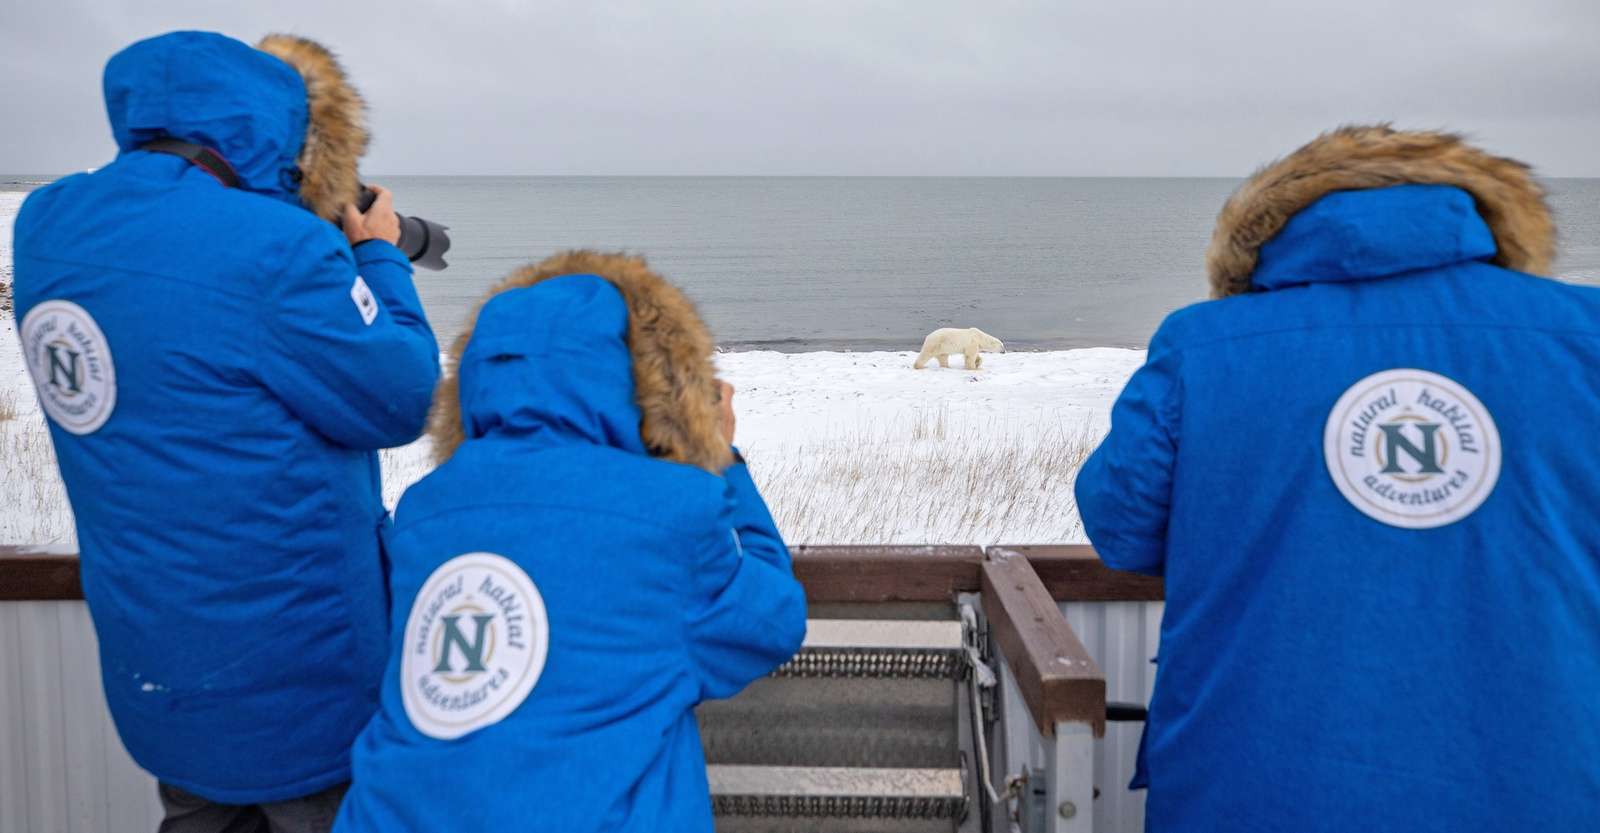 Nat Hab guests photographing polar bear, Churchill, Manitoba.